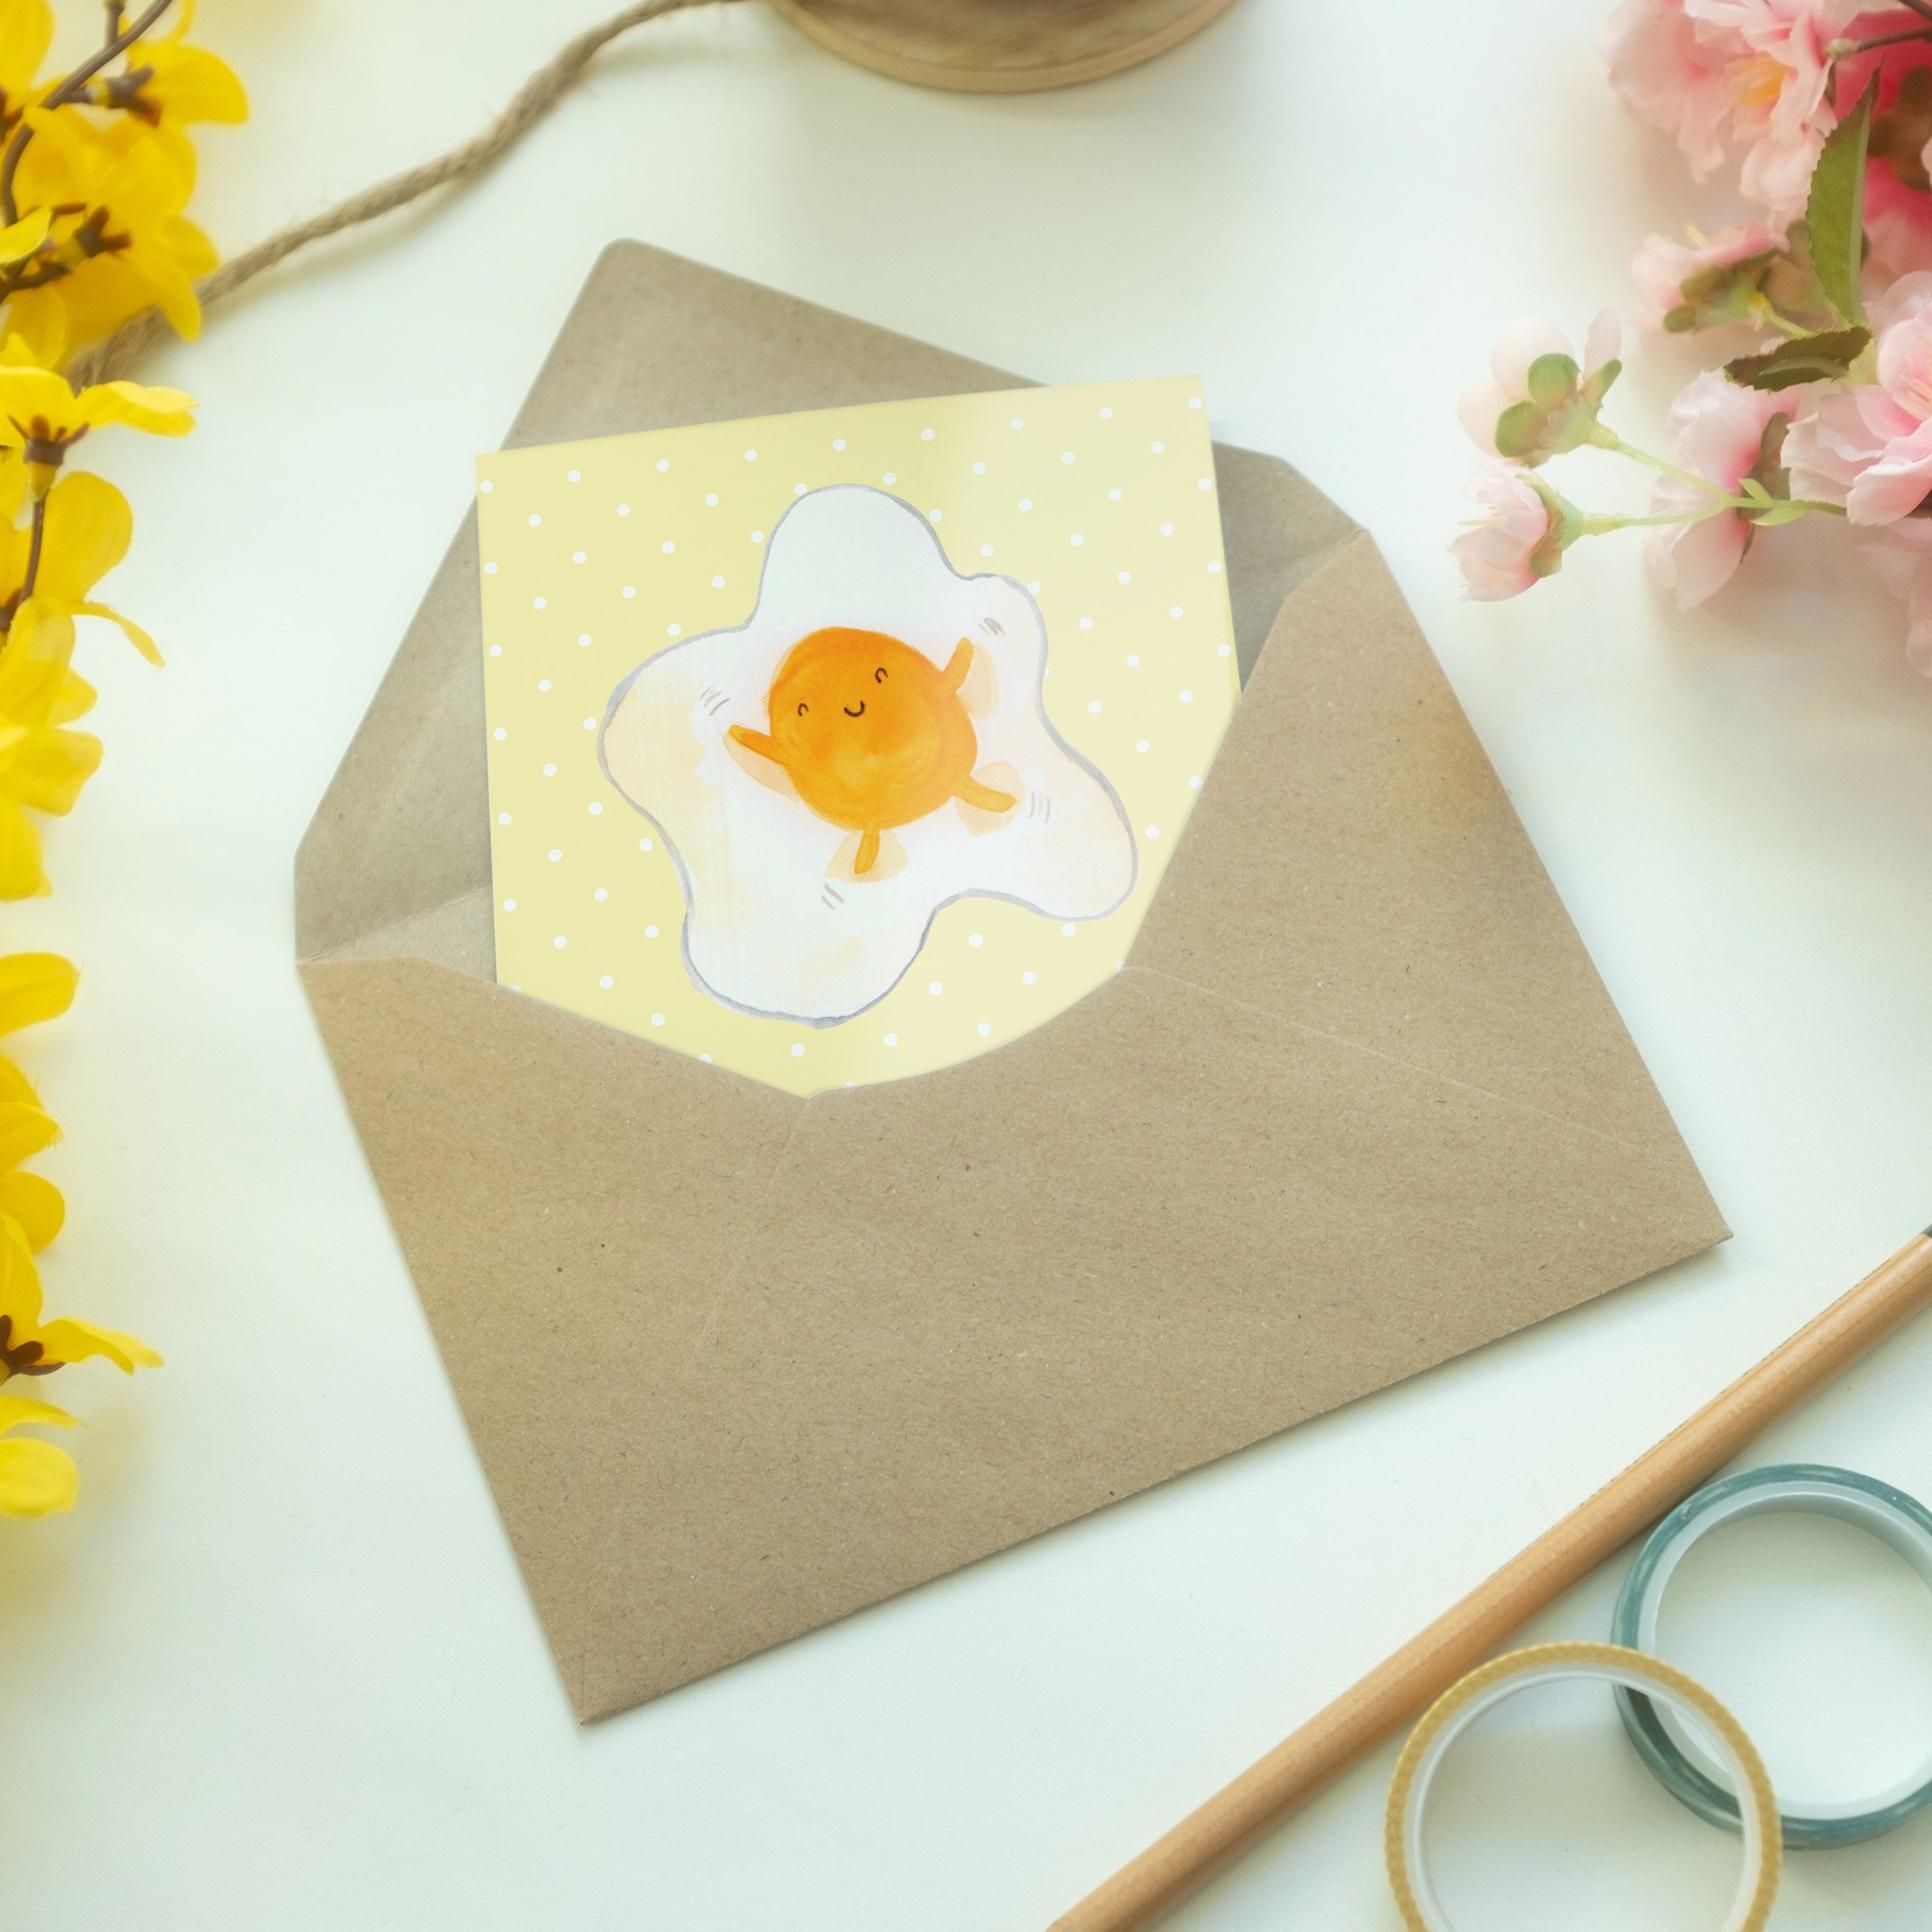 Mr. & Mrs. Panda Glüc - Hochzeitskarte, Laune, Gute Spiegelei Geschenk, Pastell Grußkarte Gelb 